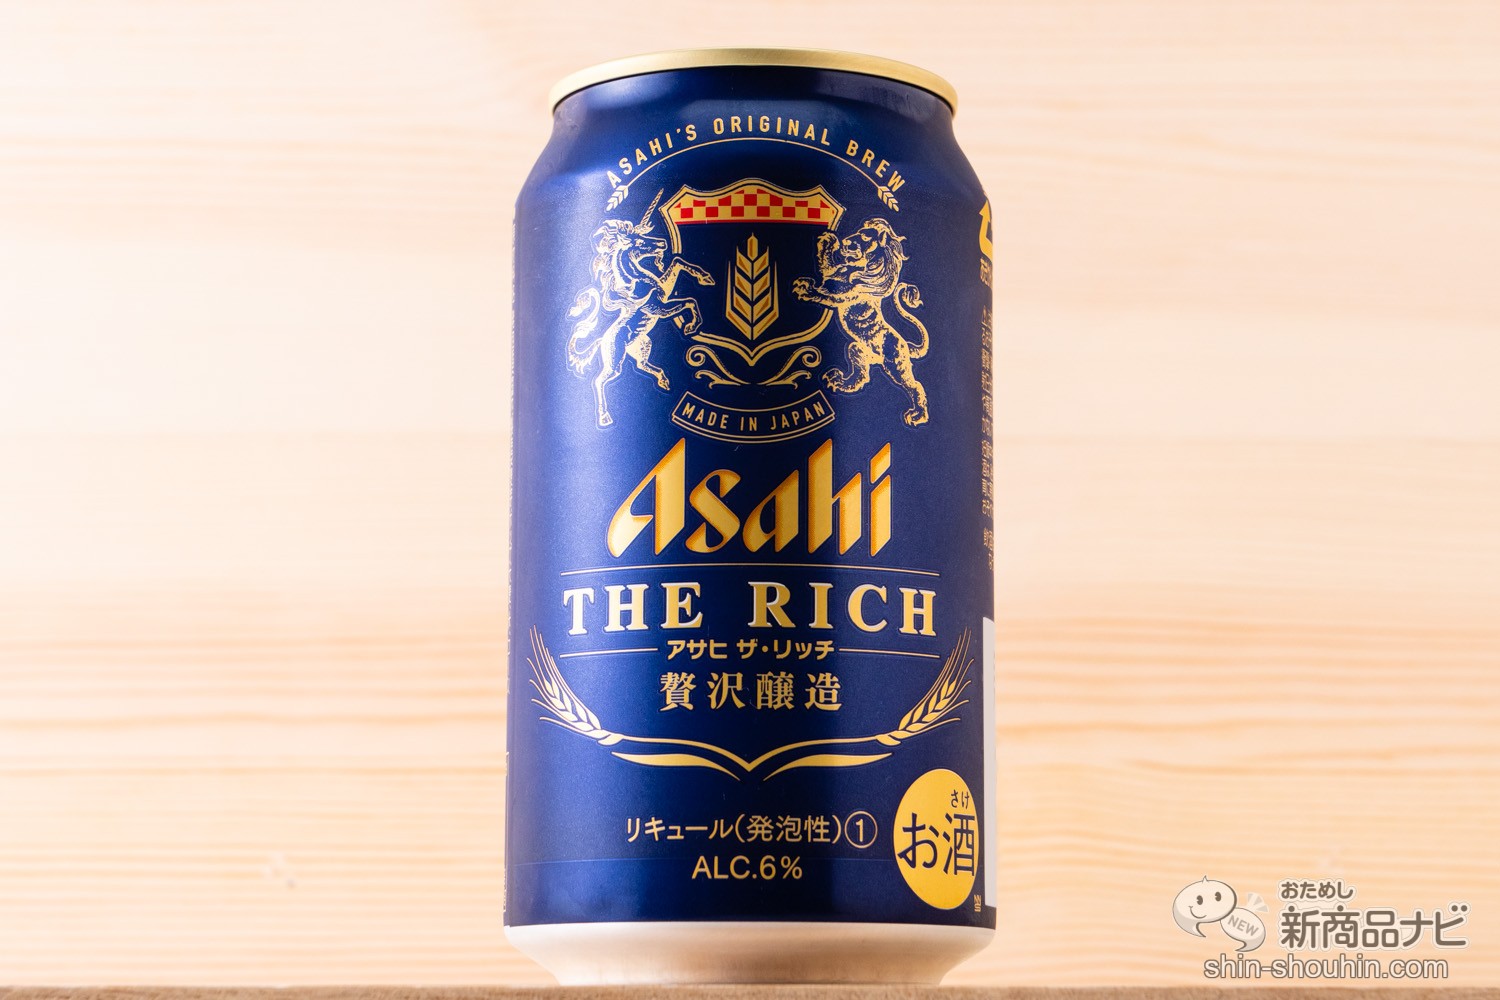 おためし新商品ナビ » Blog Archive » 『アサヒ ザ・リッチ』プレミアムビールの贅沢感を目指した新ジャンル、その実力は？